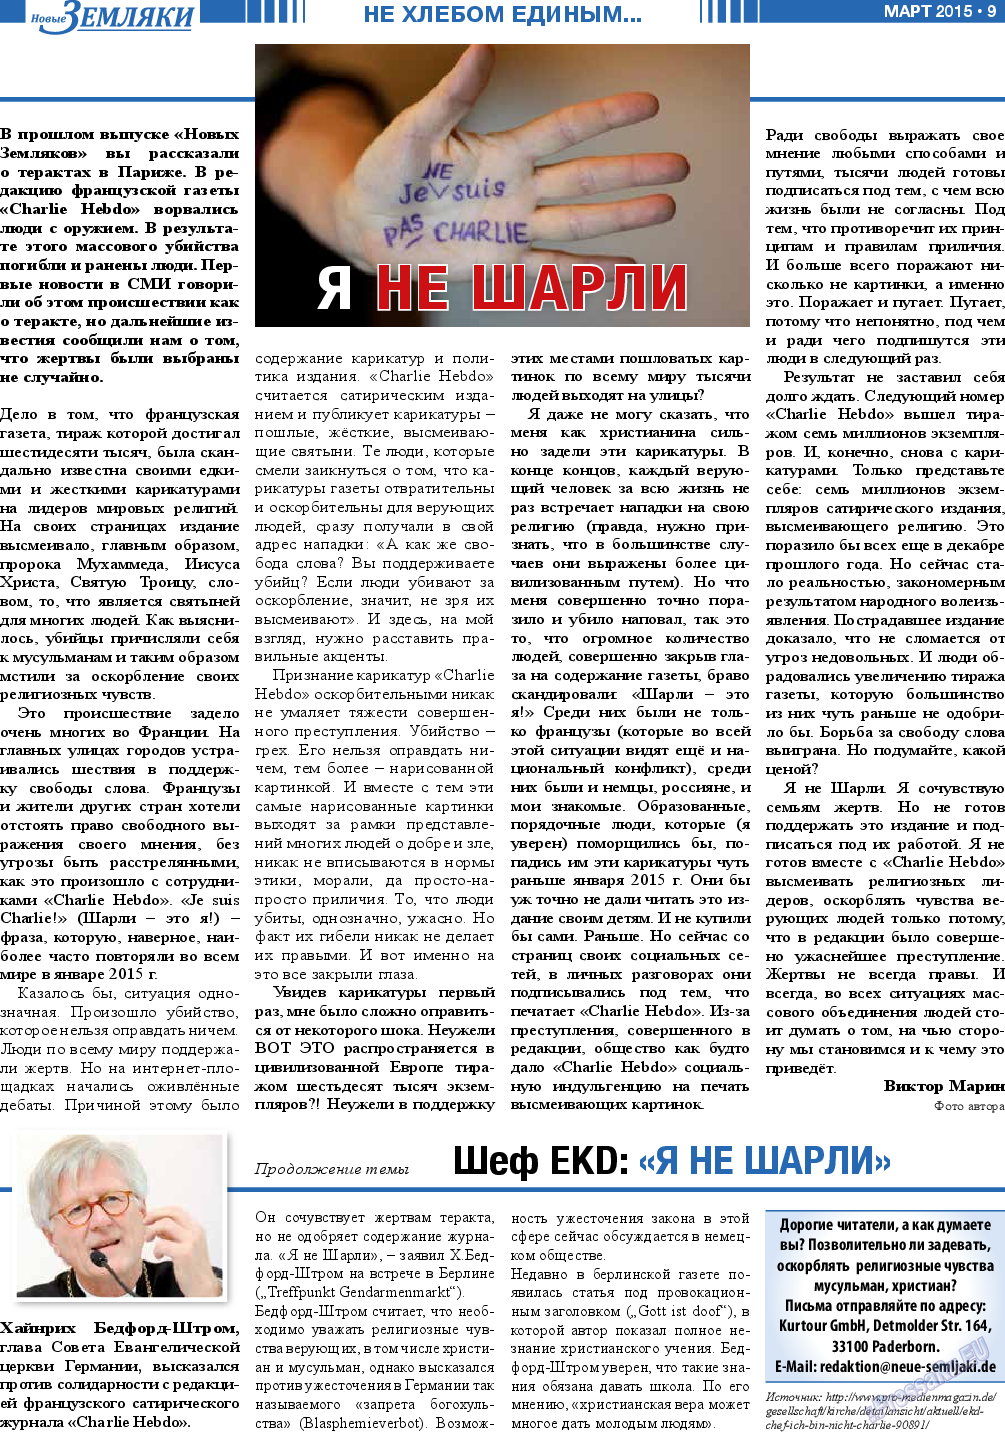 Новые Земляки, газета. 2015 №3 стр.9